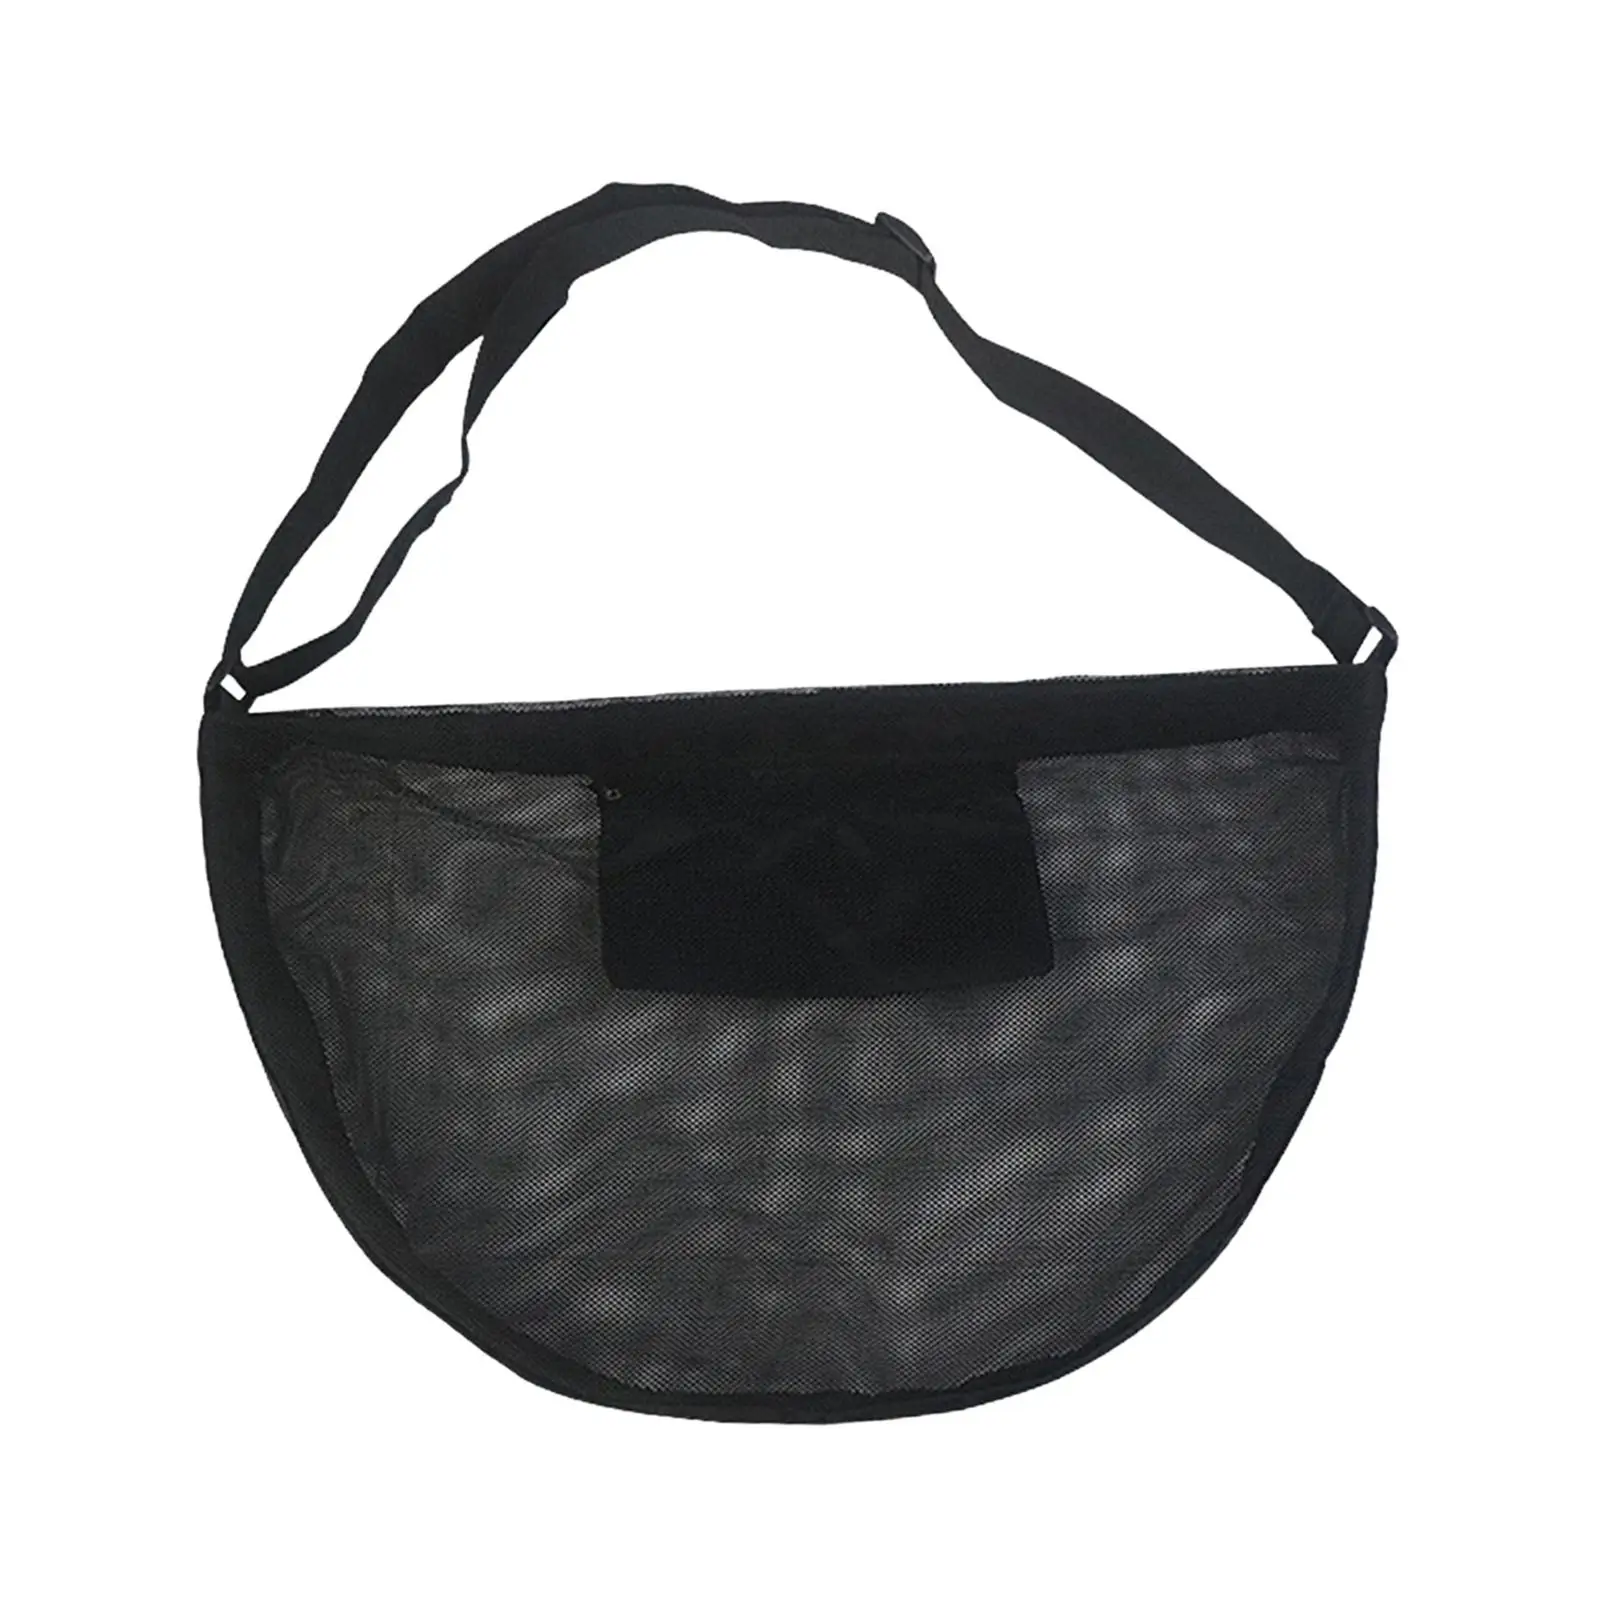 Basketball Shoulder Bag Lightweight Outdoor Adjustable Shoulder Straps Durable Tote Soccer Storage Bag for Rugby Football